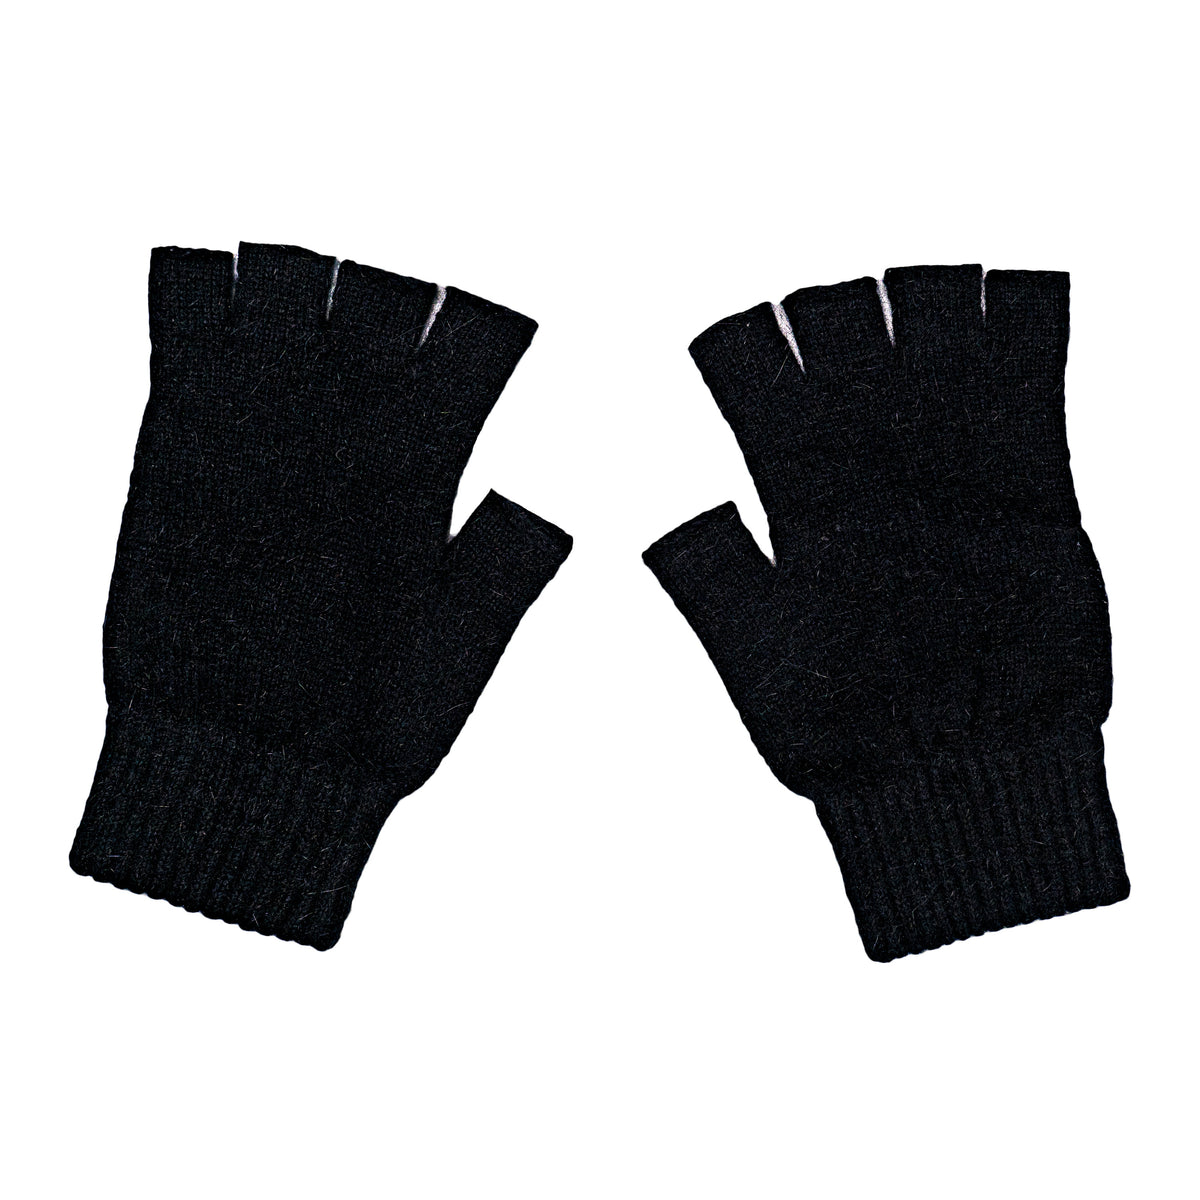 Soft Merino Wool Fingerless Gloves in Light Grey. Fashionable